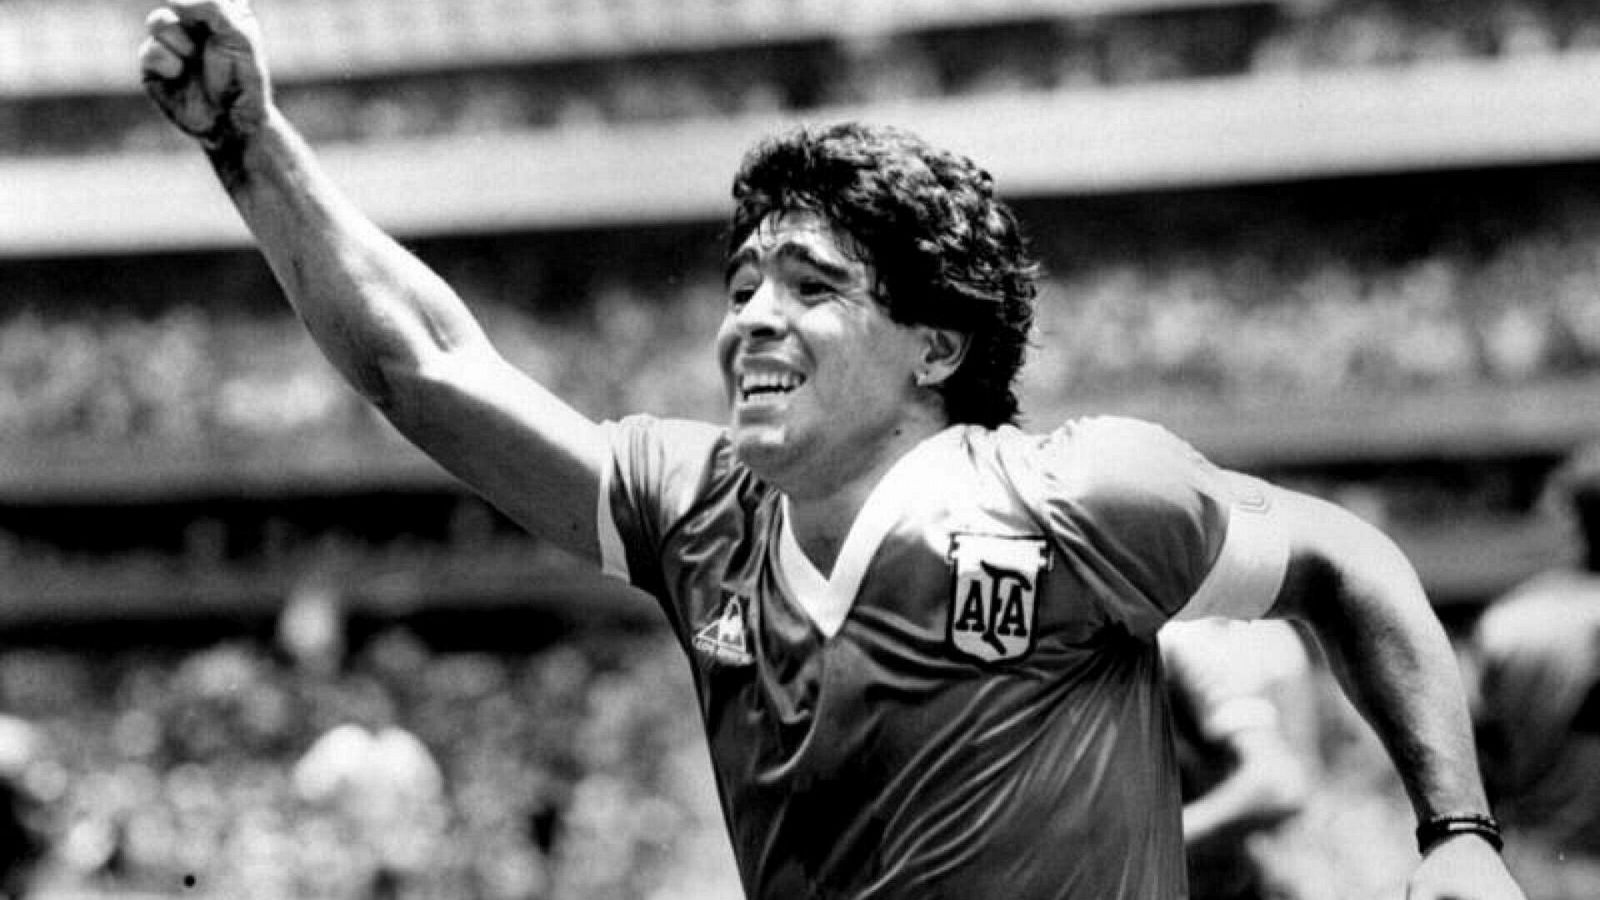 Le hacemos un homenaje al jugador de futbol: Maradona